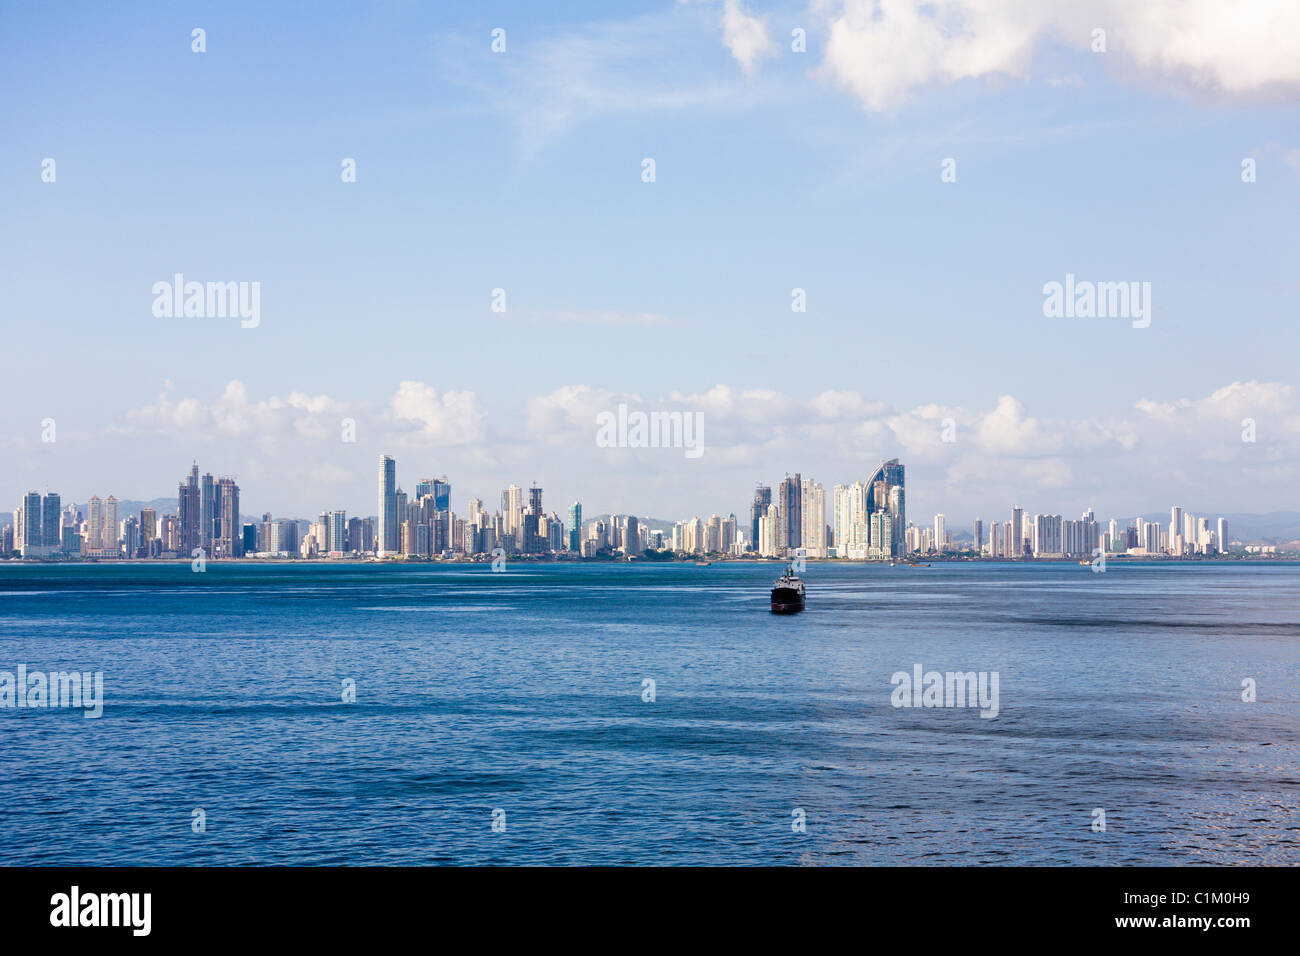 Panama City skyline, Panama Stock Photo